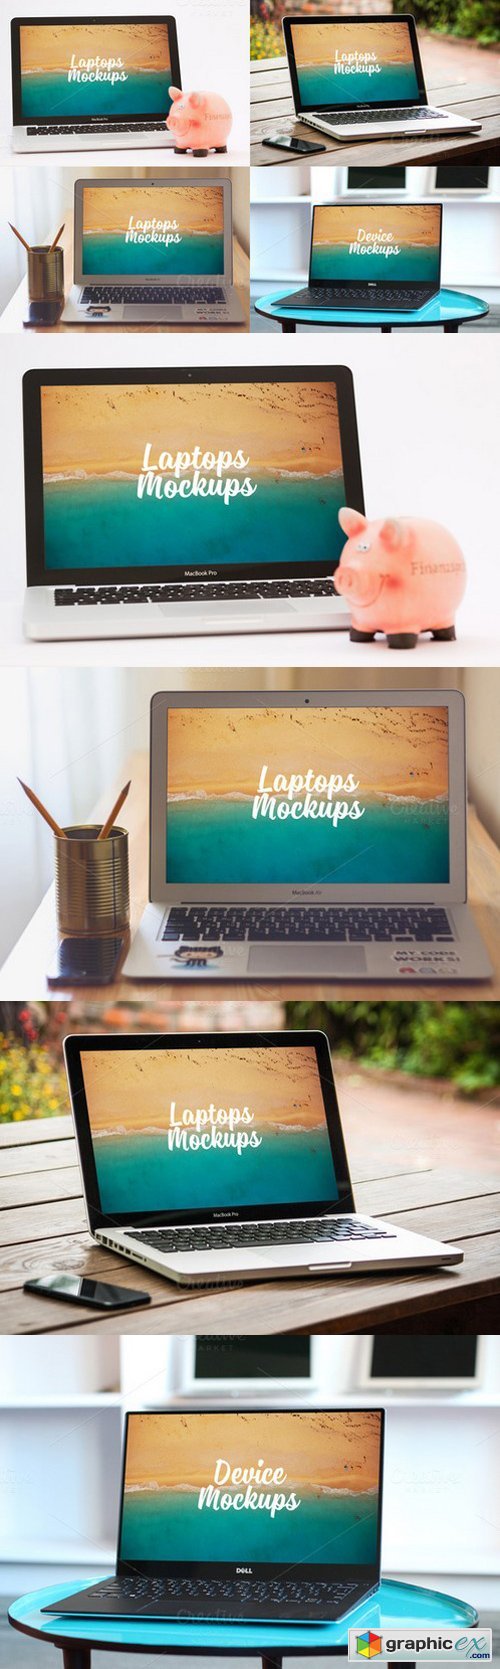 Laptops - Mockups V06